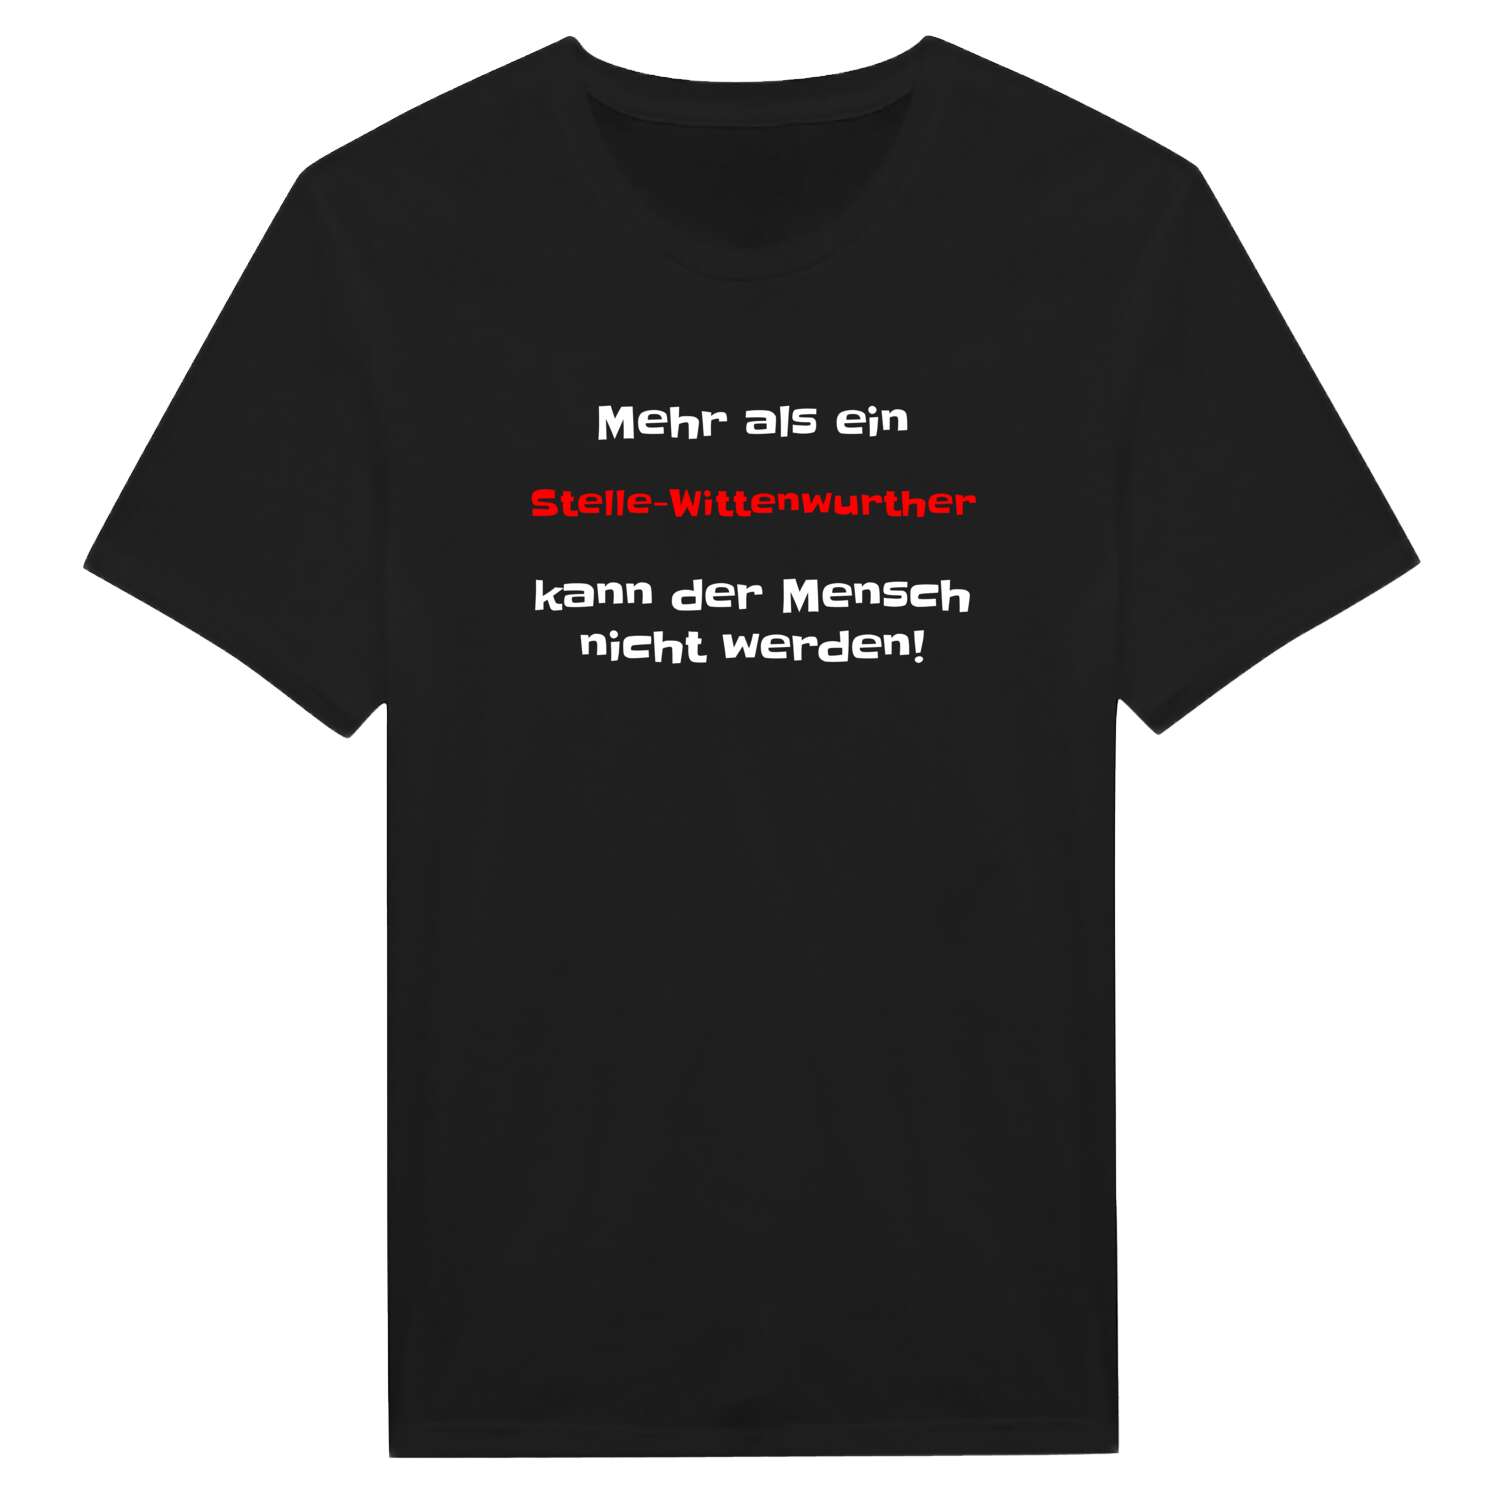 Stelle-Wittenwurth T-Shirt »Mehr als ein«